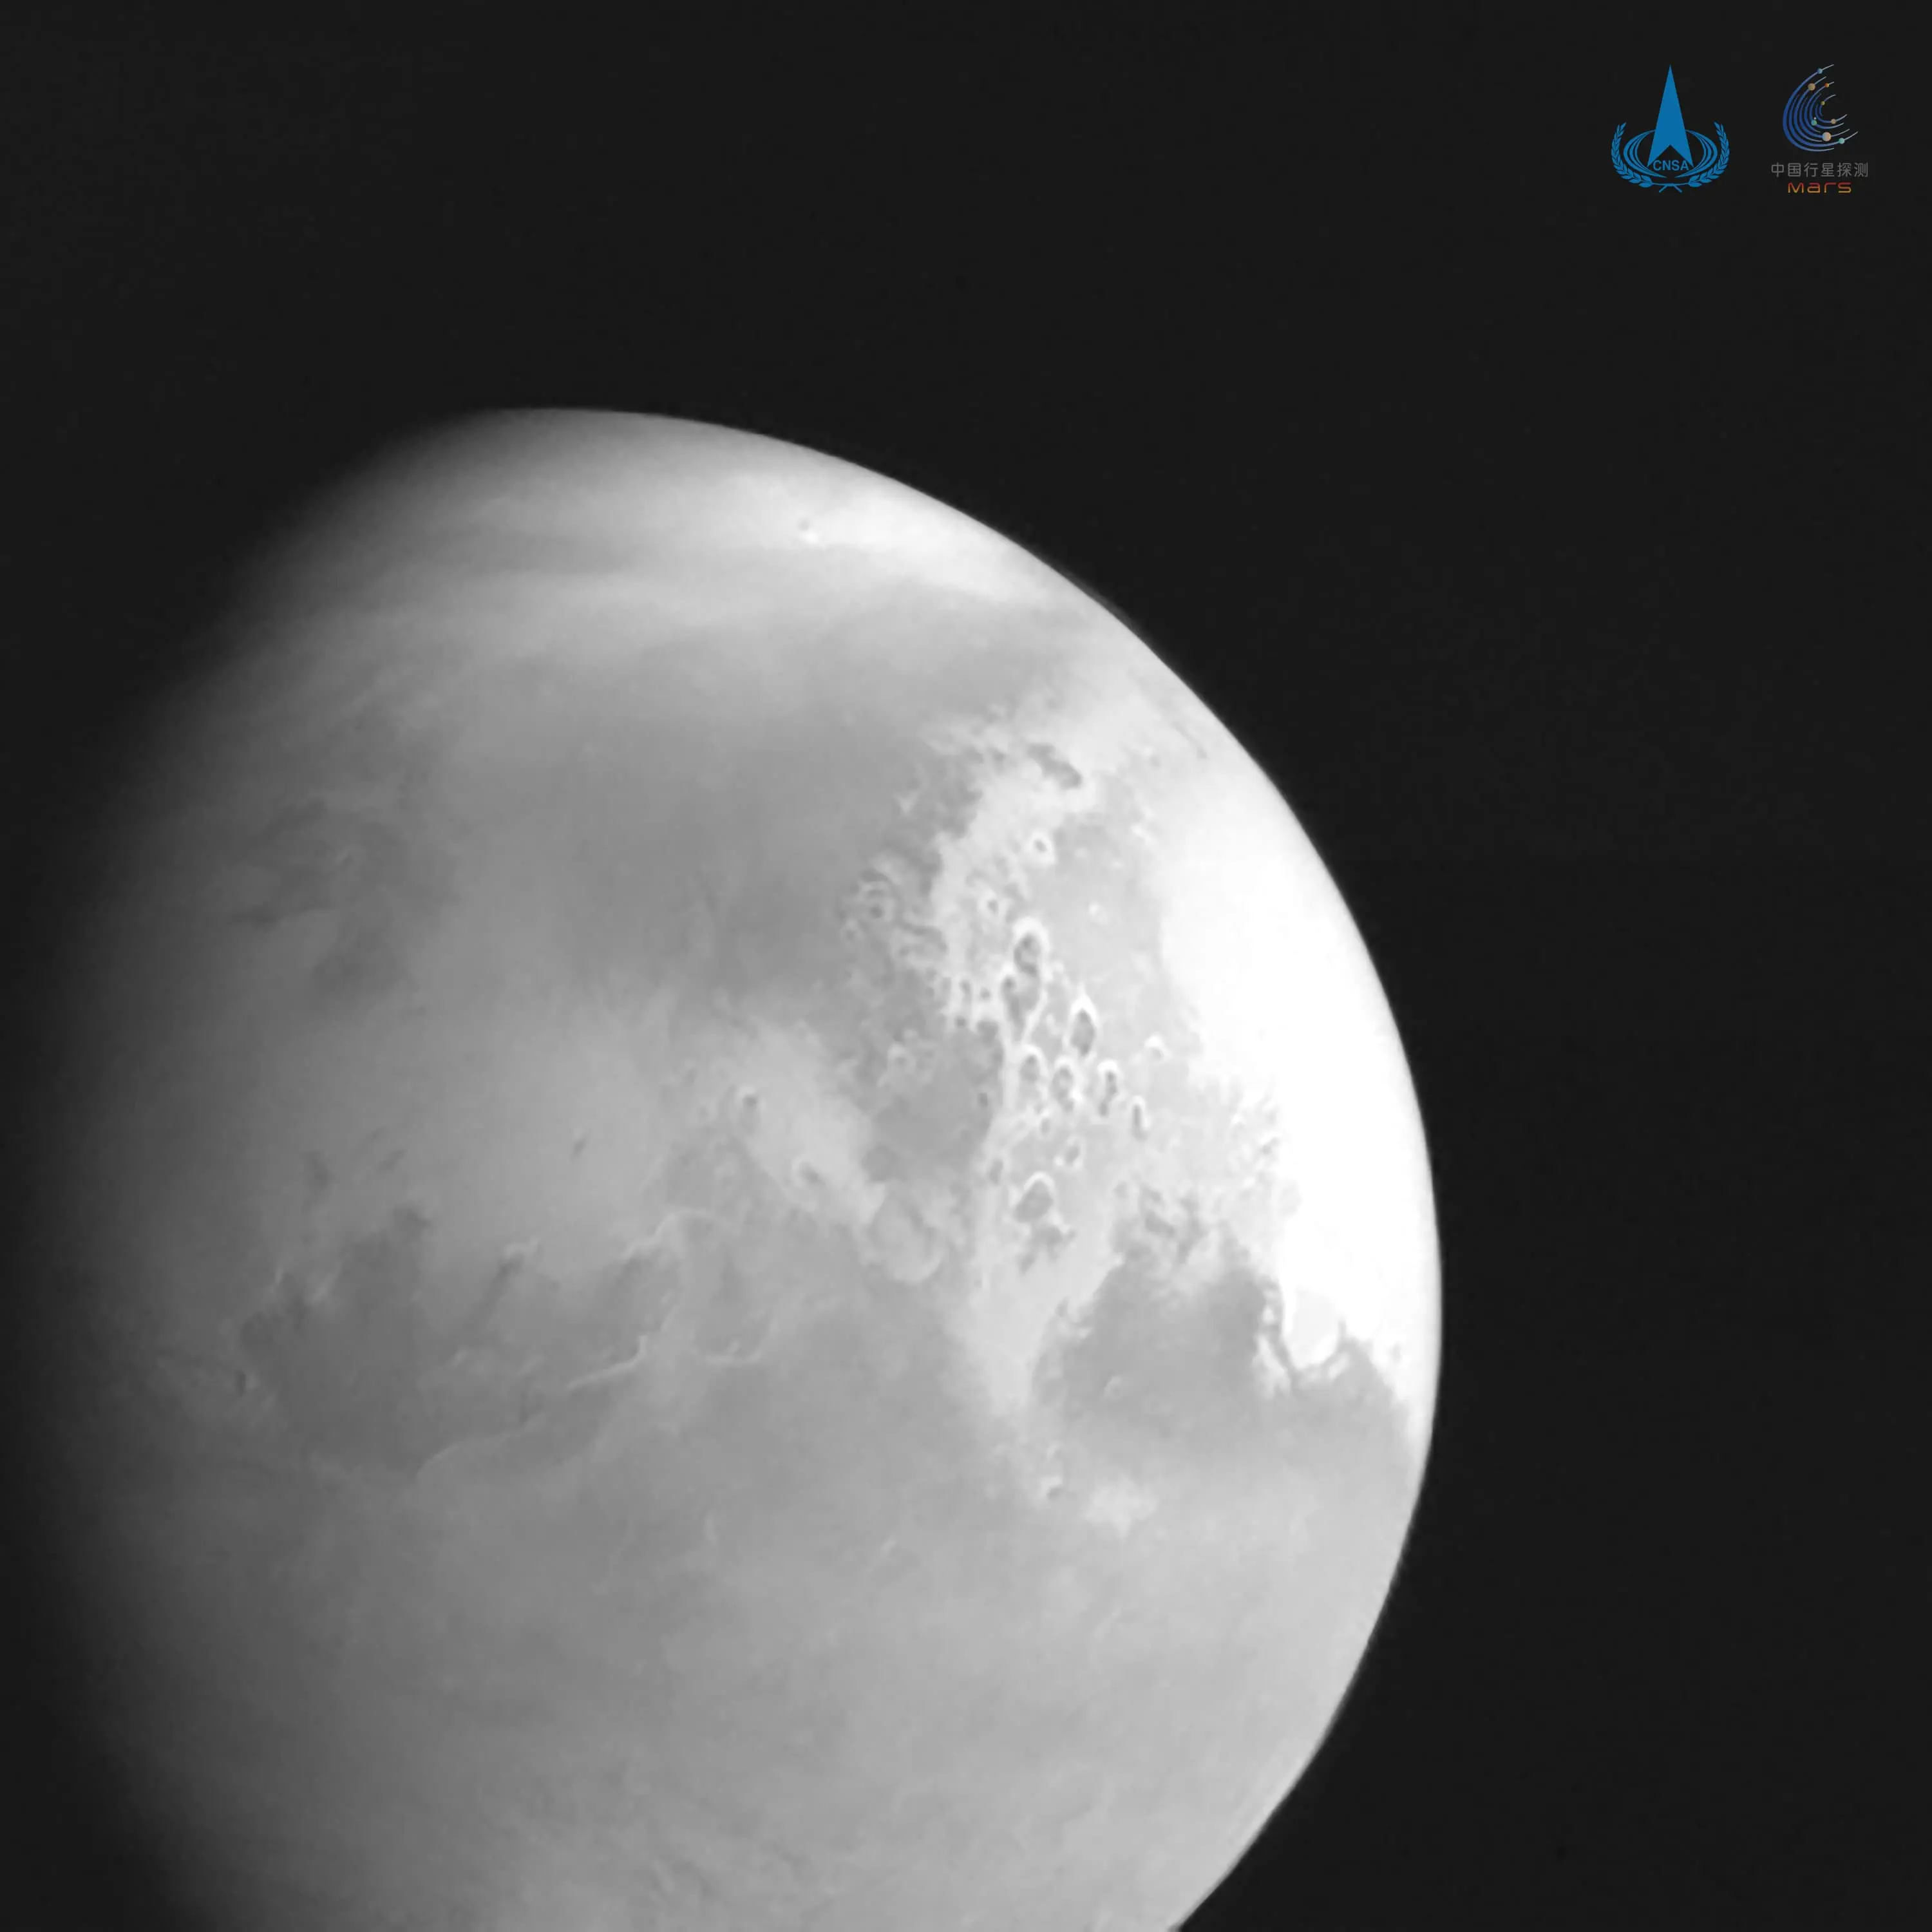 天问一号拍摄的首幅火星图像